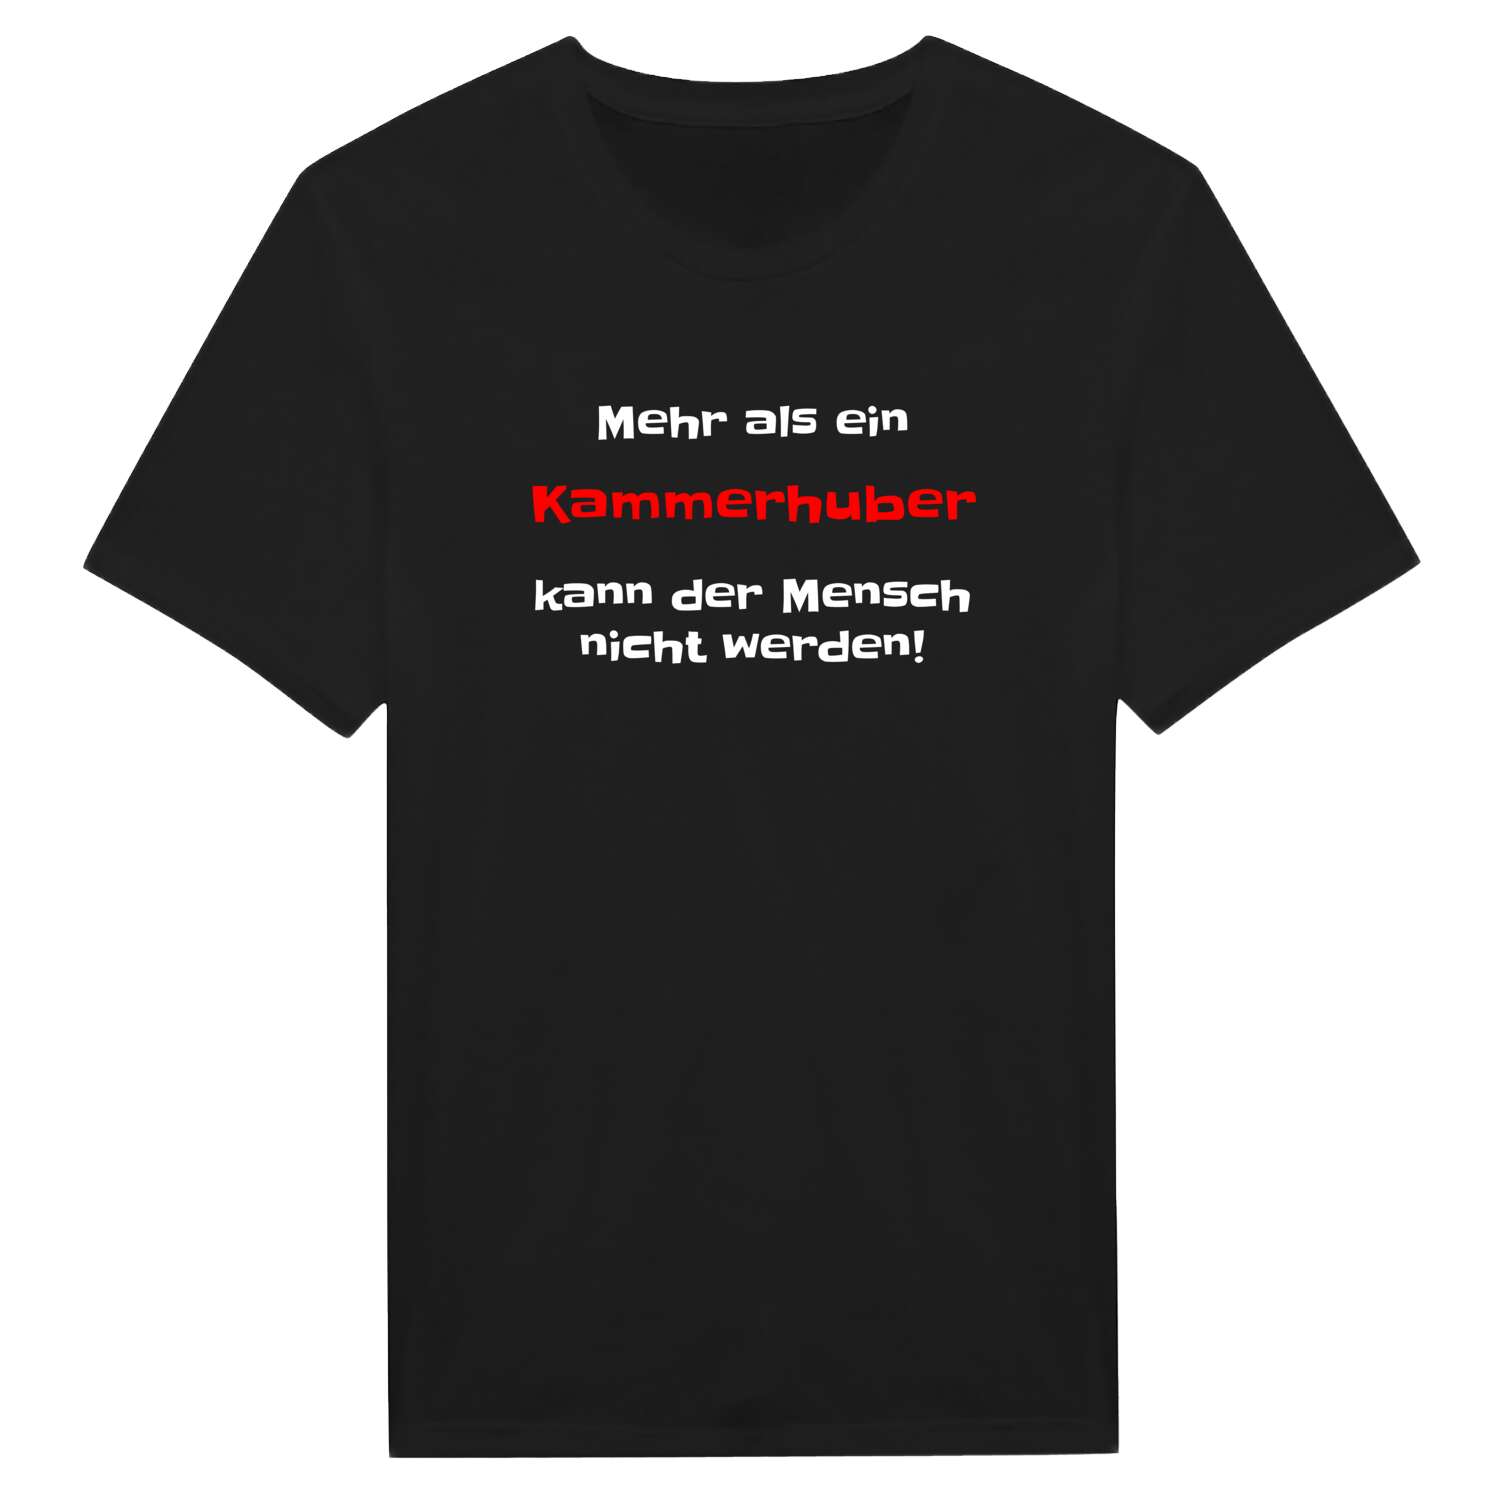 Kammerhub T-Shirt »Mehr als ein«